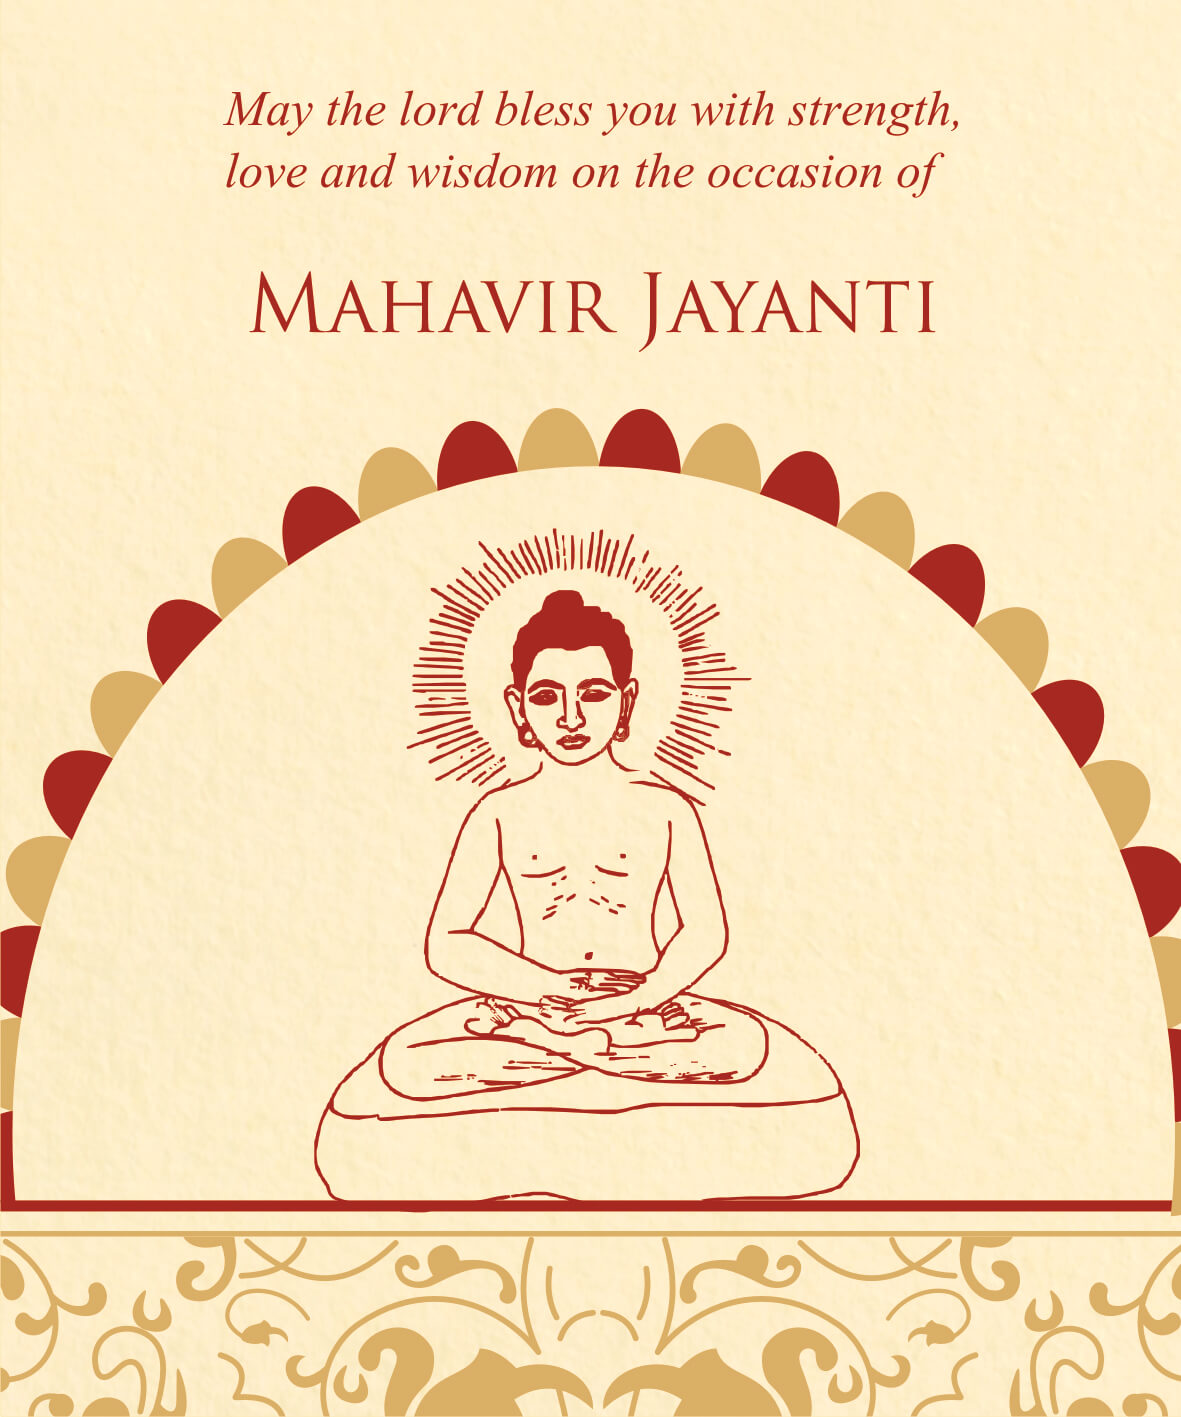 Mahavir Jayanti | eGreetings Portal